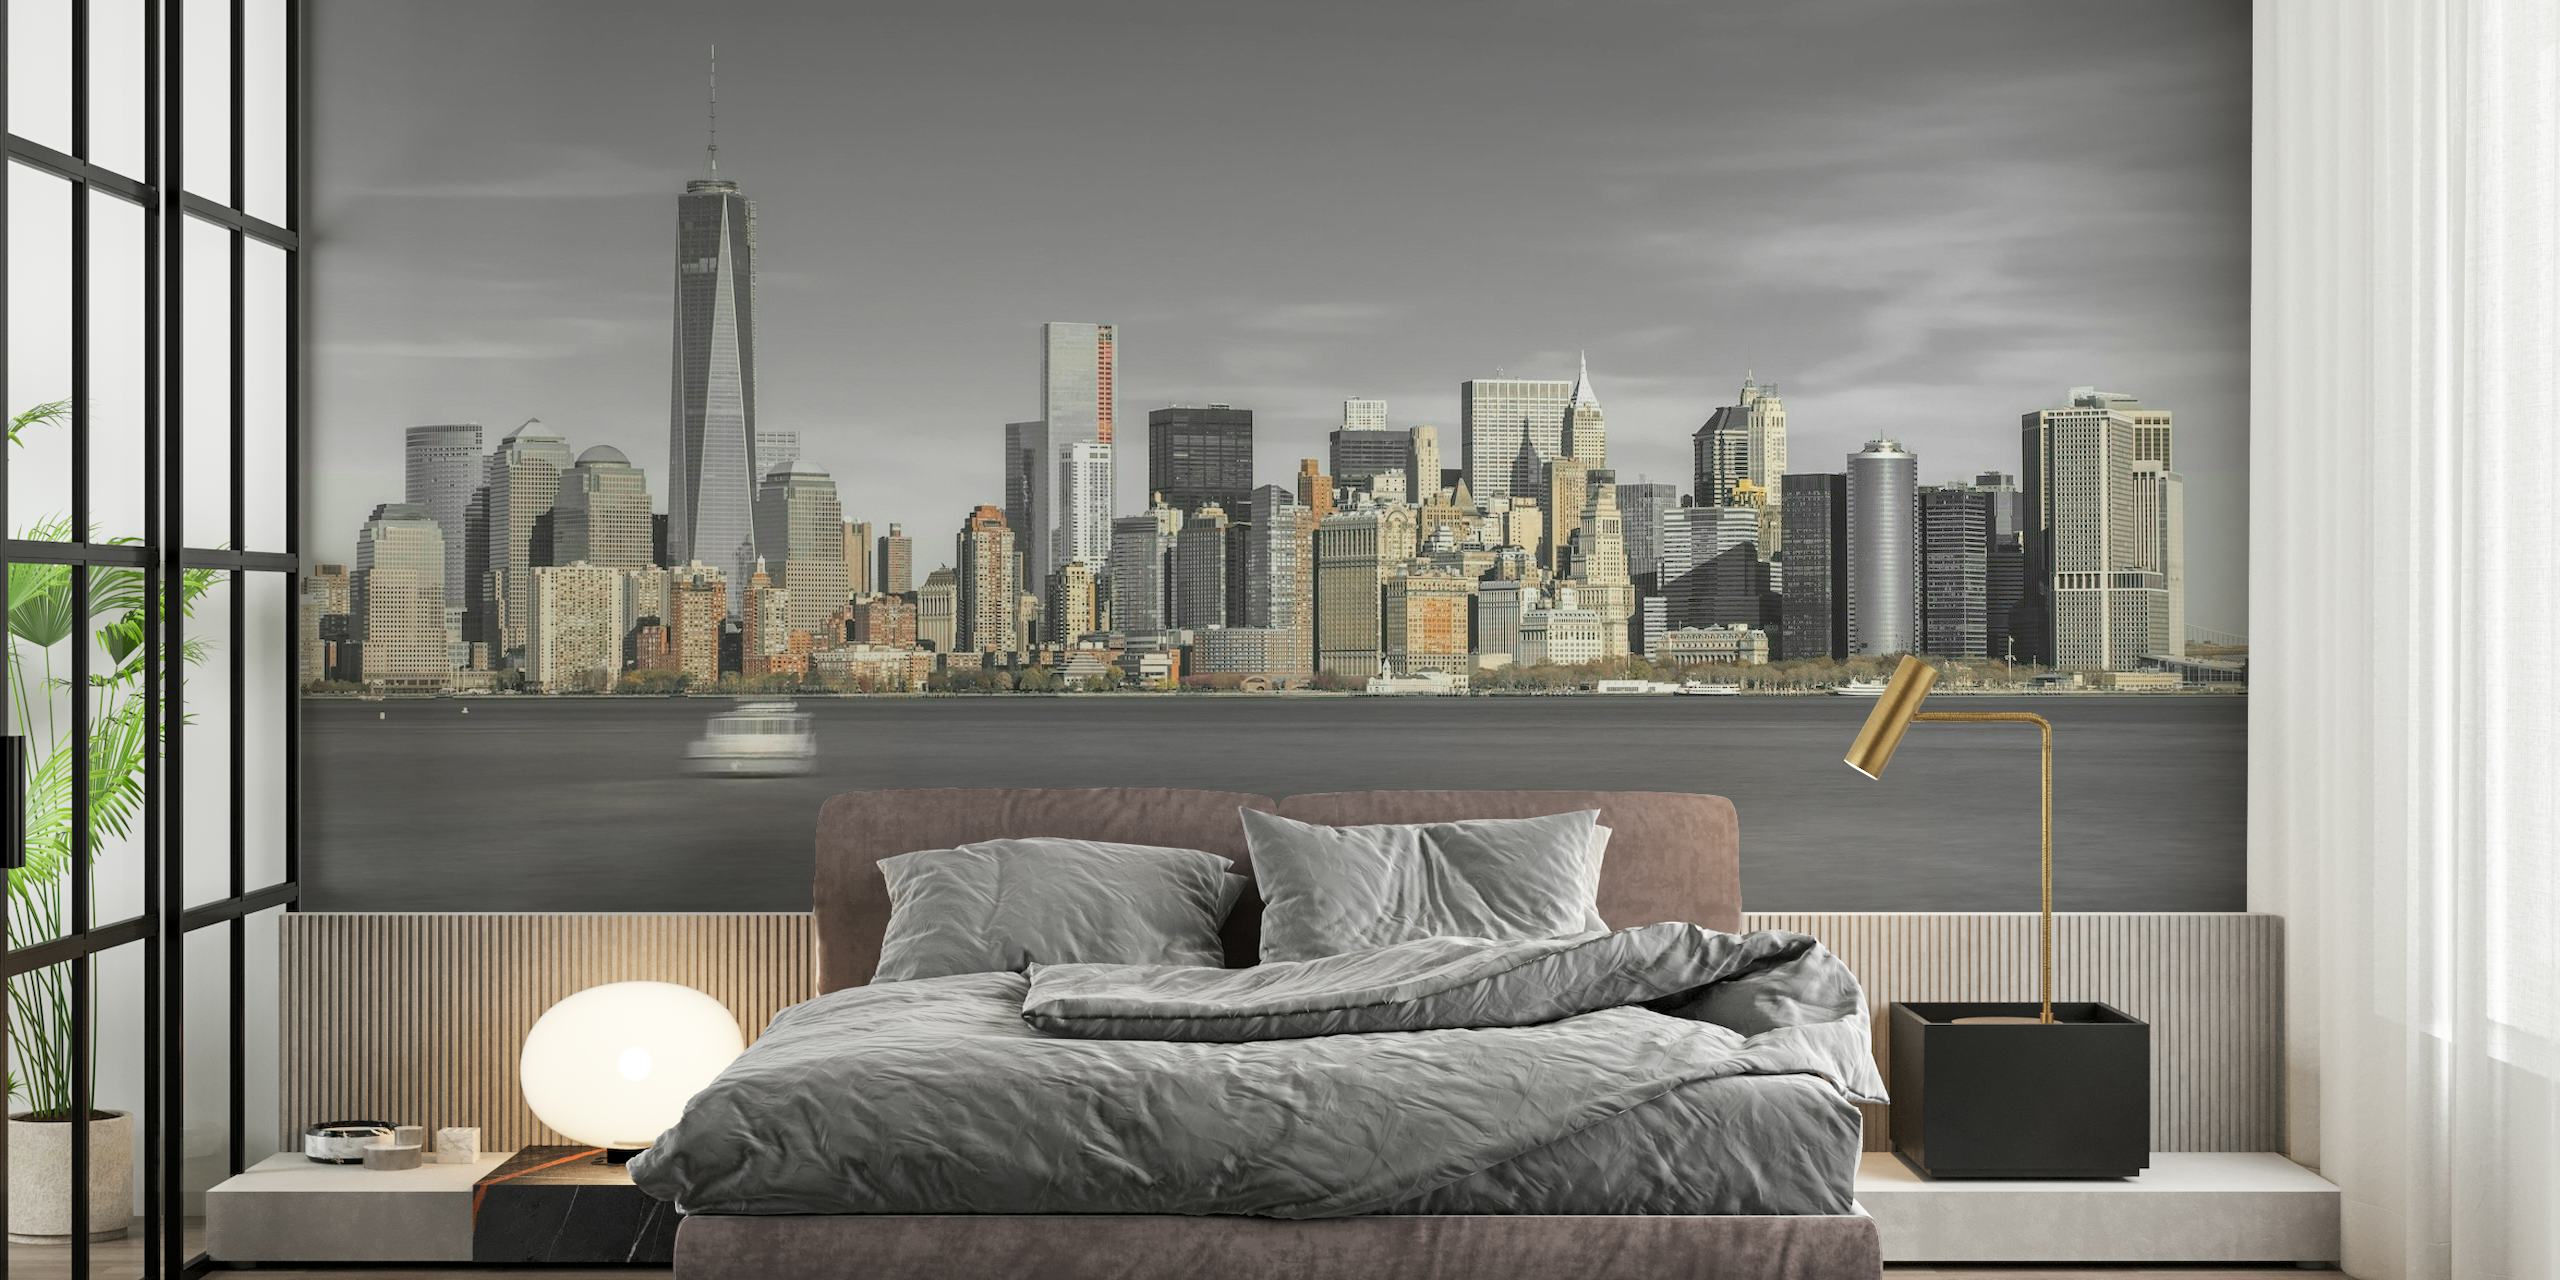 Fototapete mit der Skyline von Lower Manhattan mit Wolkenkratzern und ruhigem Wasser für die Innen- und Bürodekoration